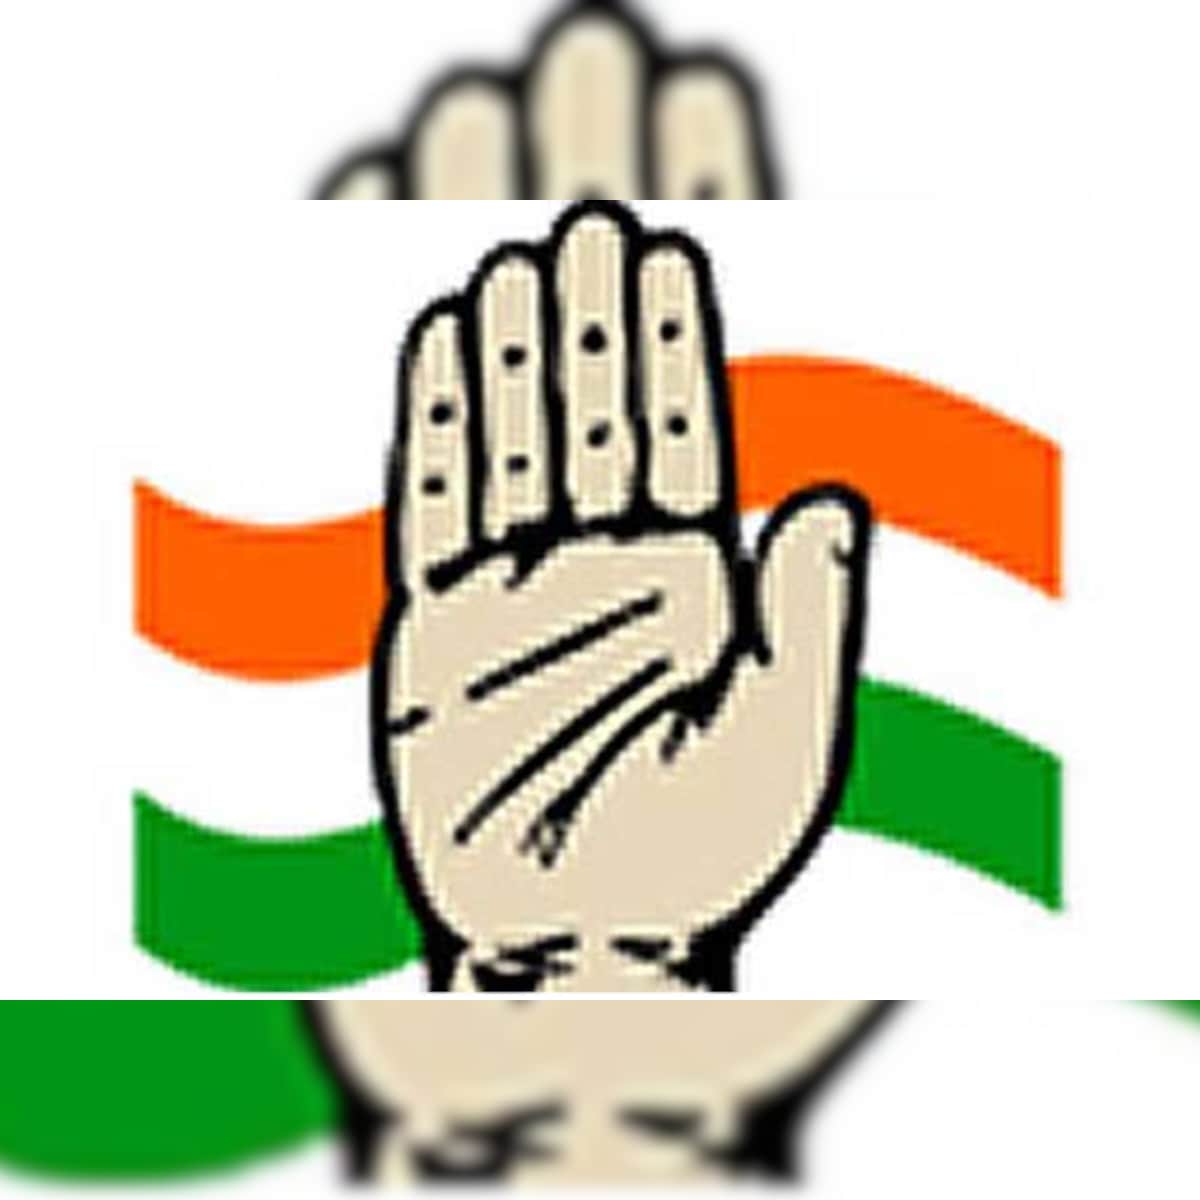 SWOT Analysis of Indian National Congress